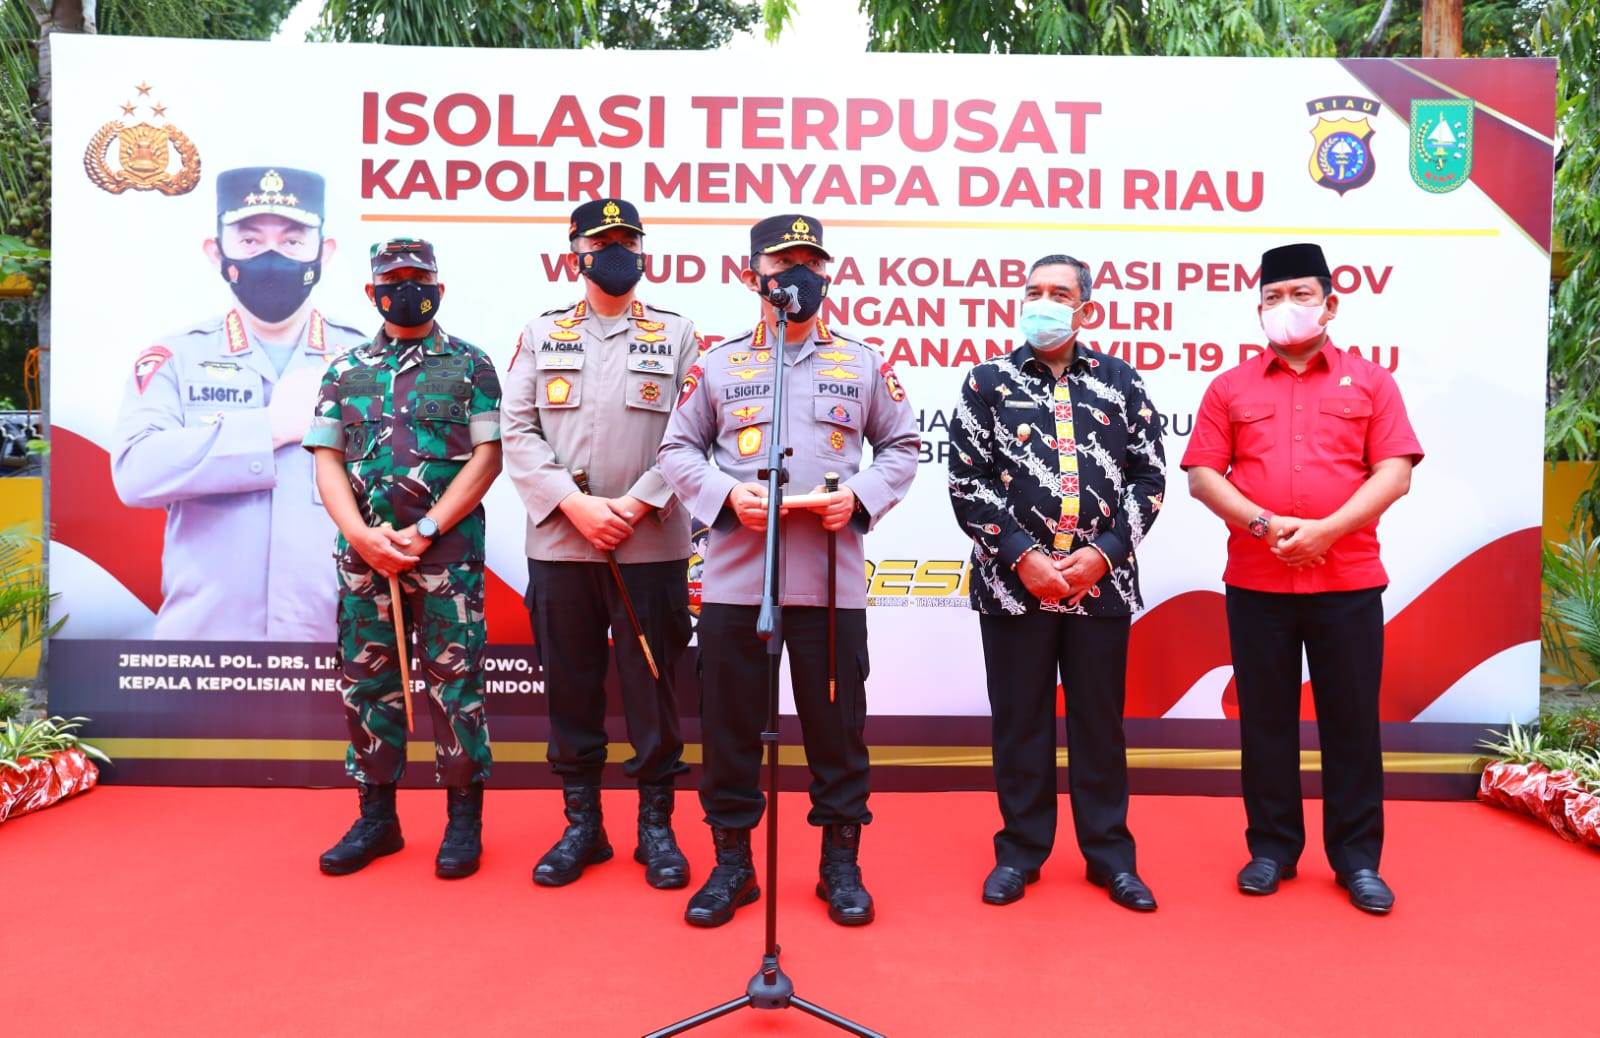 Kapolri meninjau secara langsung lokasi isolasi terpusat di Asrama Haji Pekanbaru, Riau. (Foto: PMJ News). 